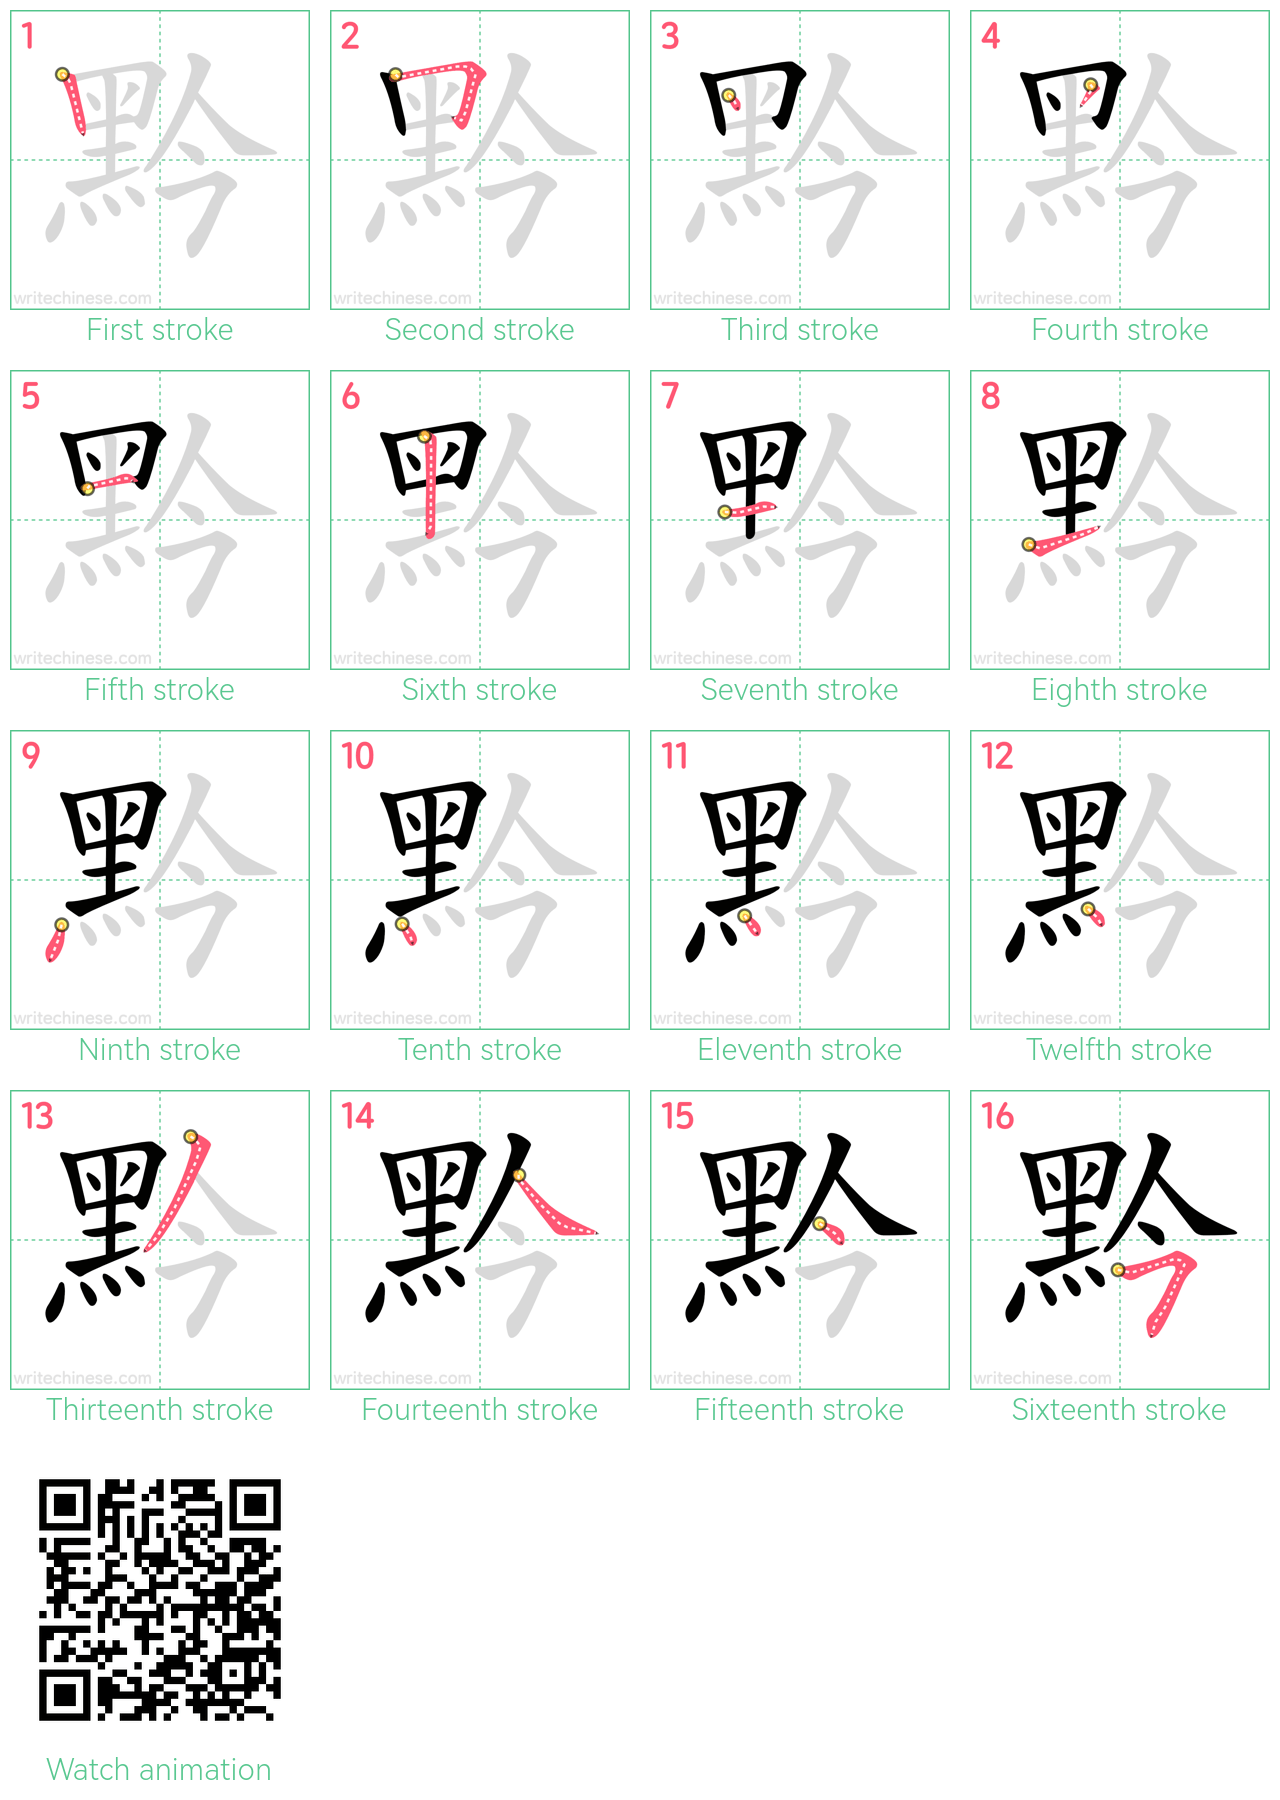 黔 step-by-step stroke order diagrams